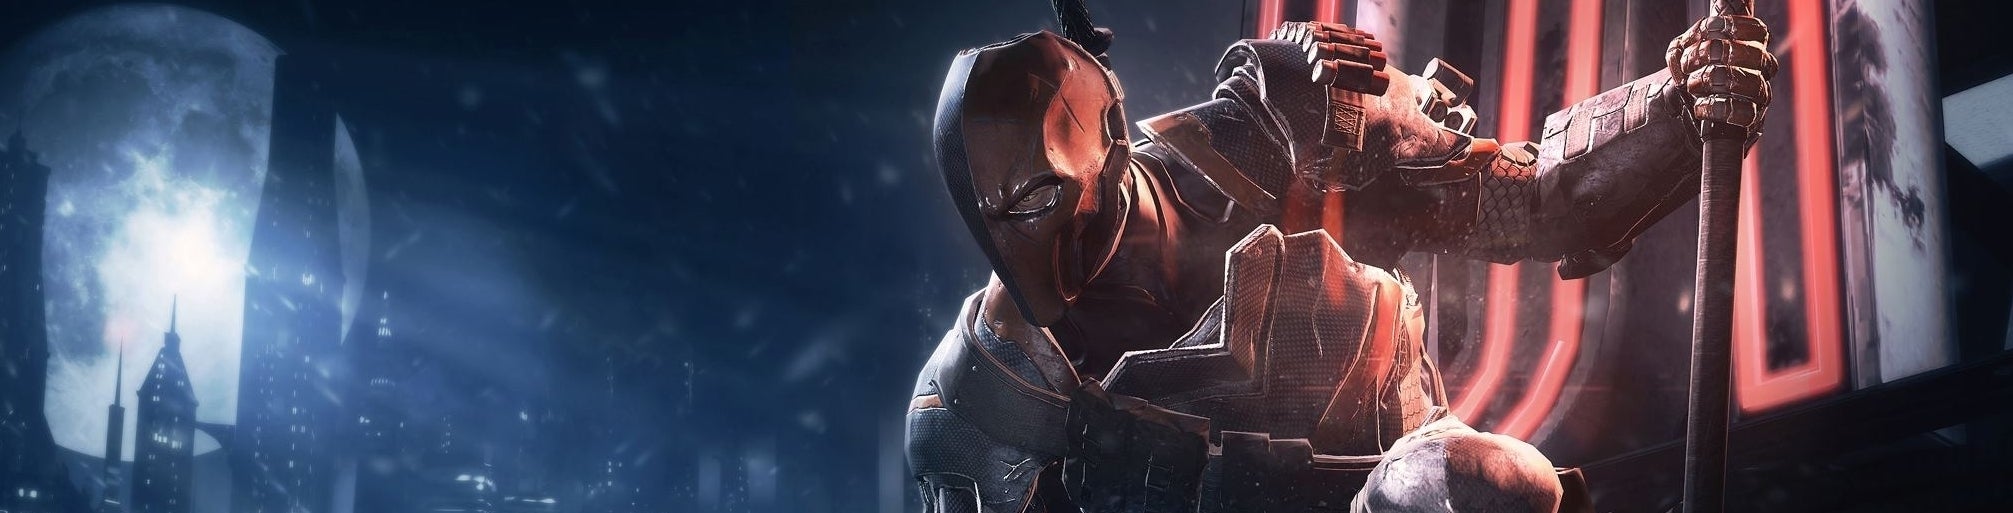 Image for Nvidia si může odškrtnout další hru: Batman Arkham Origins